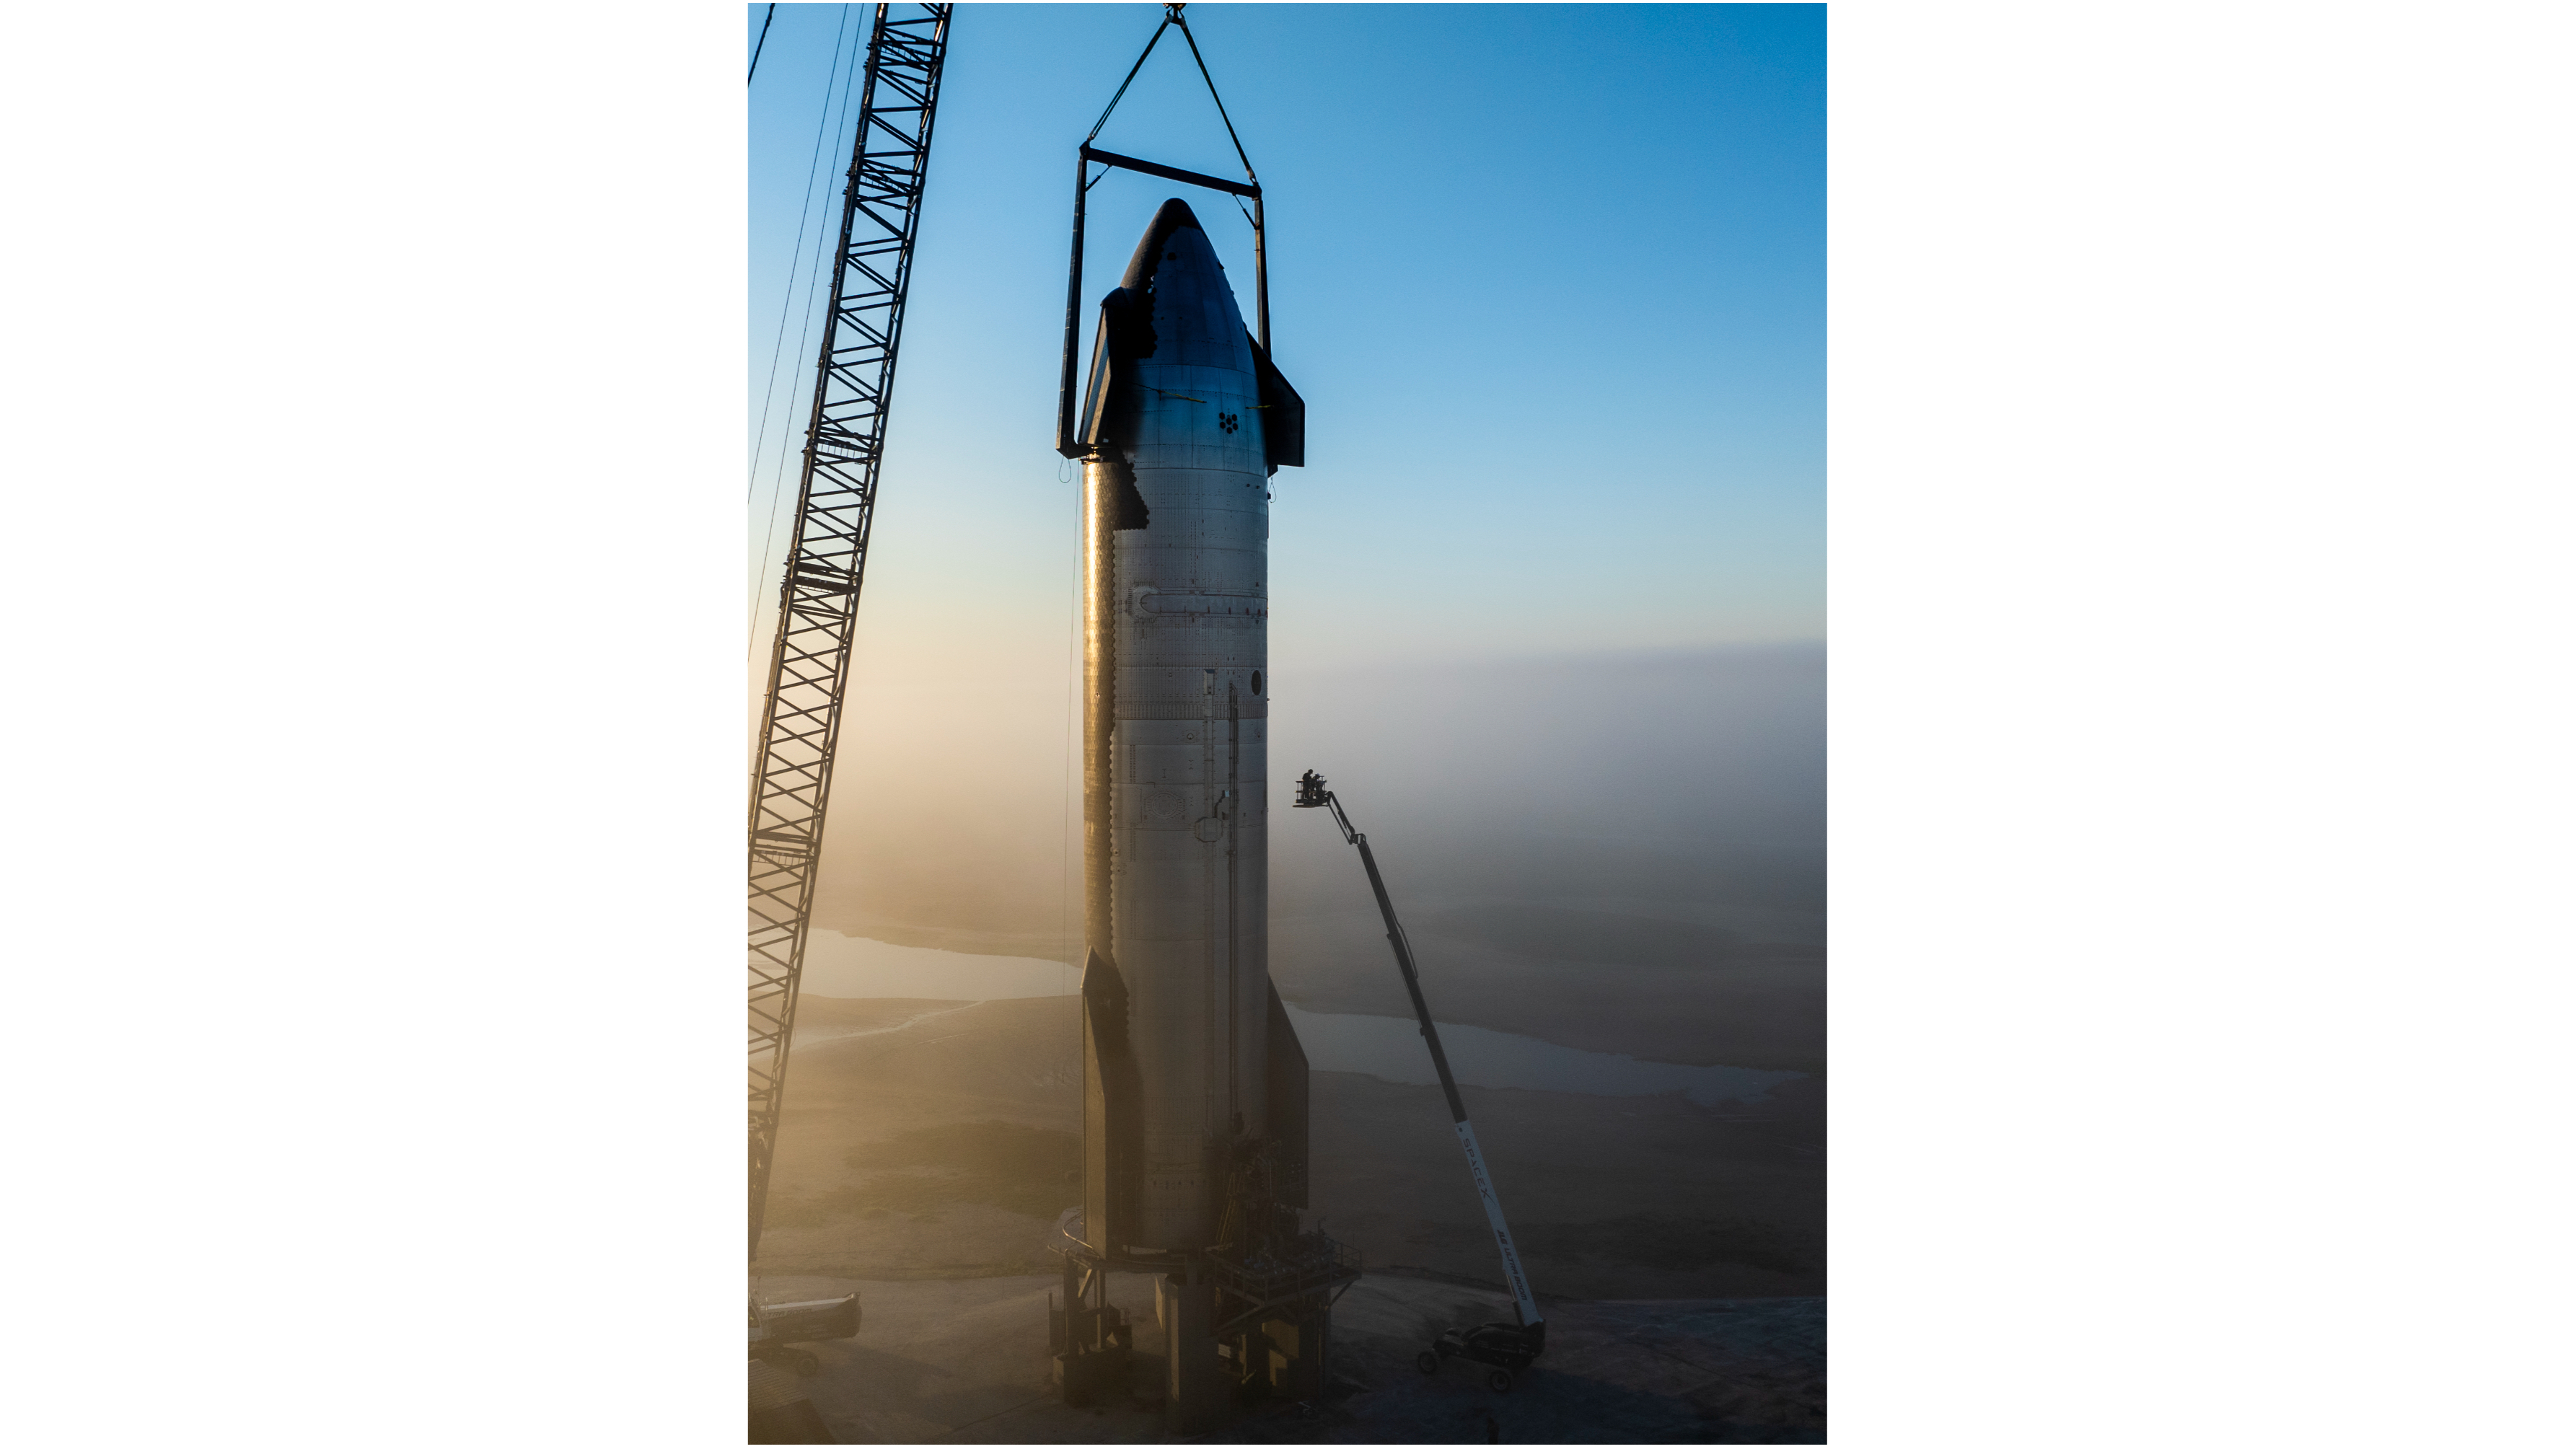 SpaceX traslada su próxima nave espacial a una plataforma de pruebas antes del cuarto vuelo (fotos)